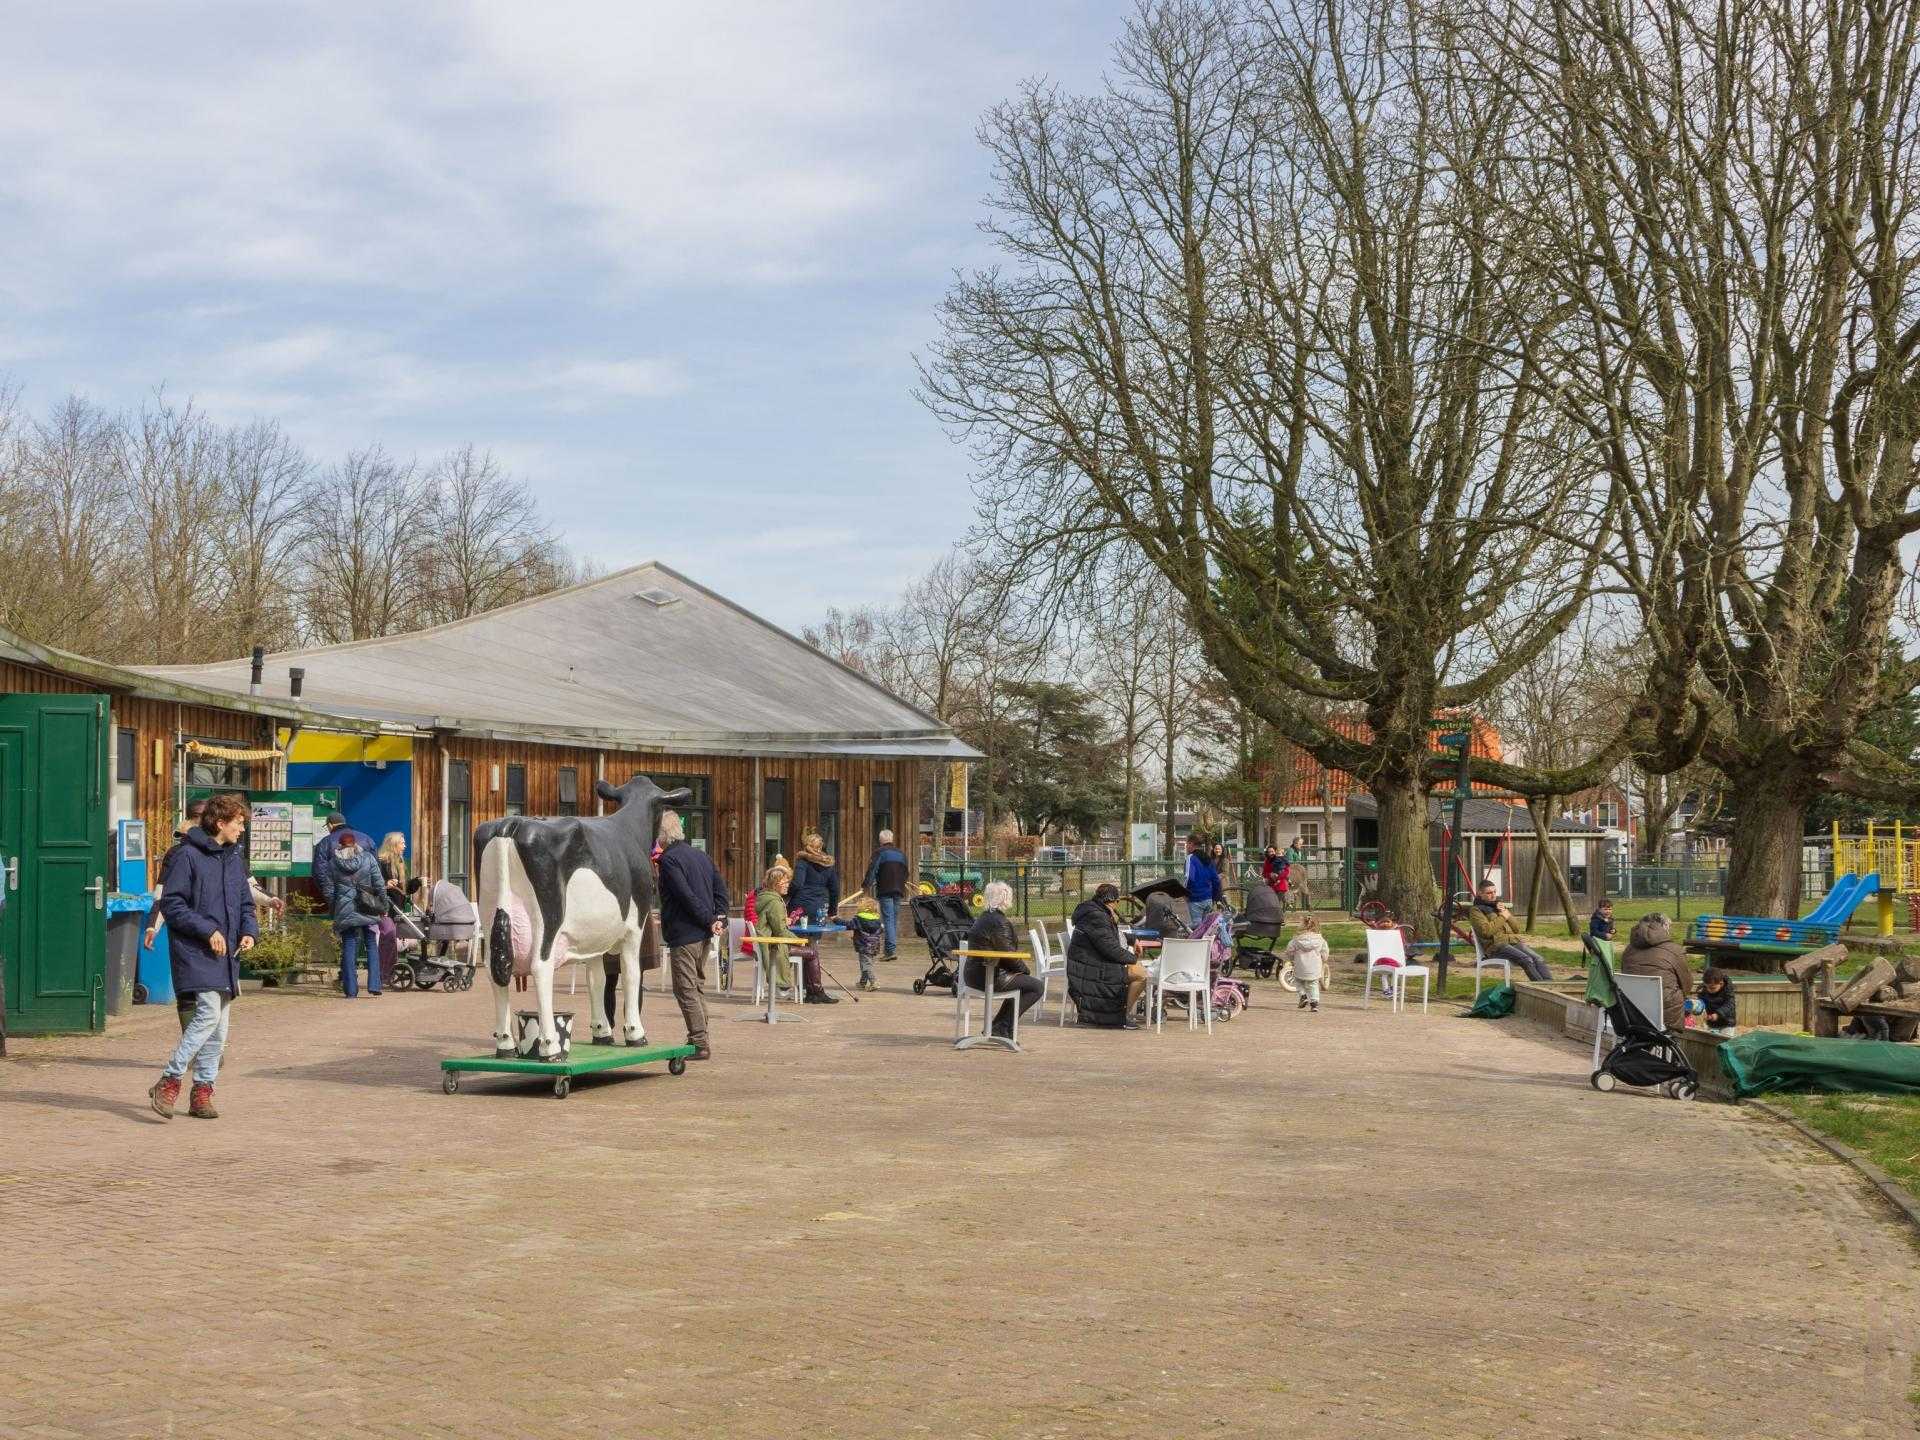 De Boerenzwaluw petting zoo: the farm for everyone | Visit Haarlemmermeer